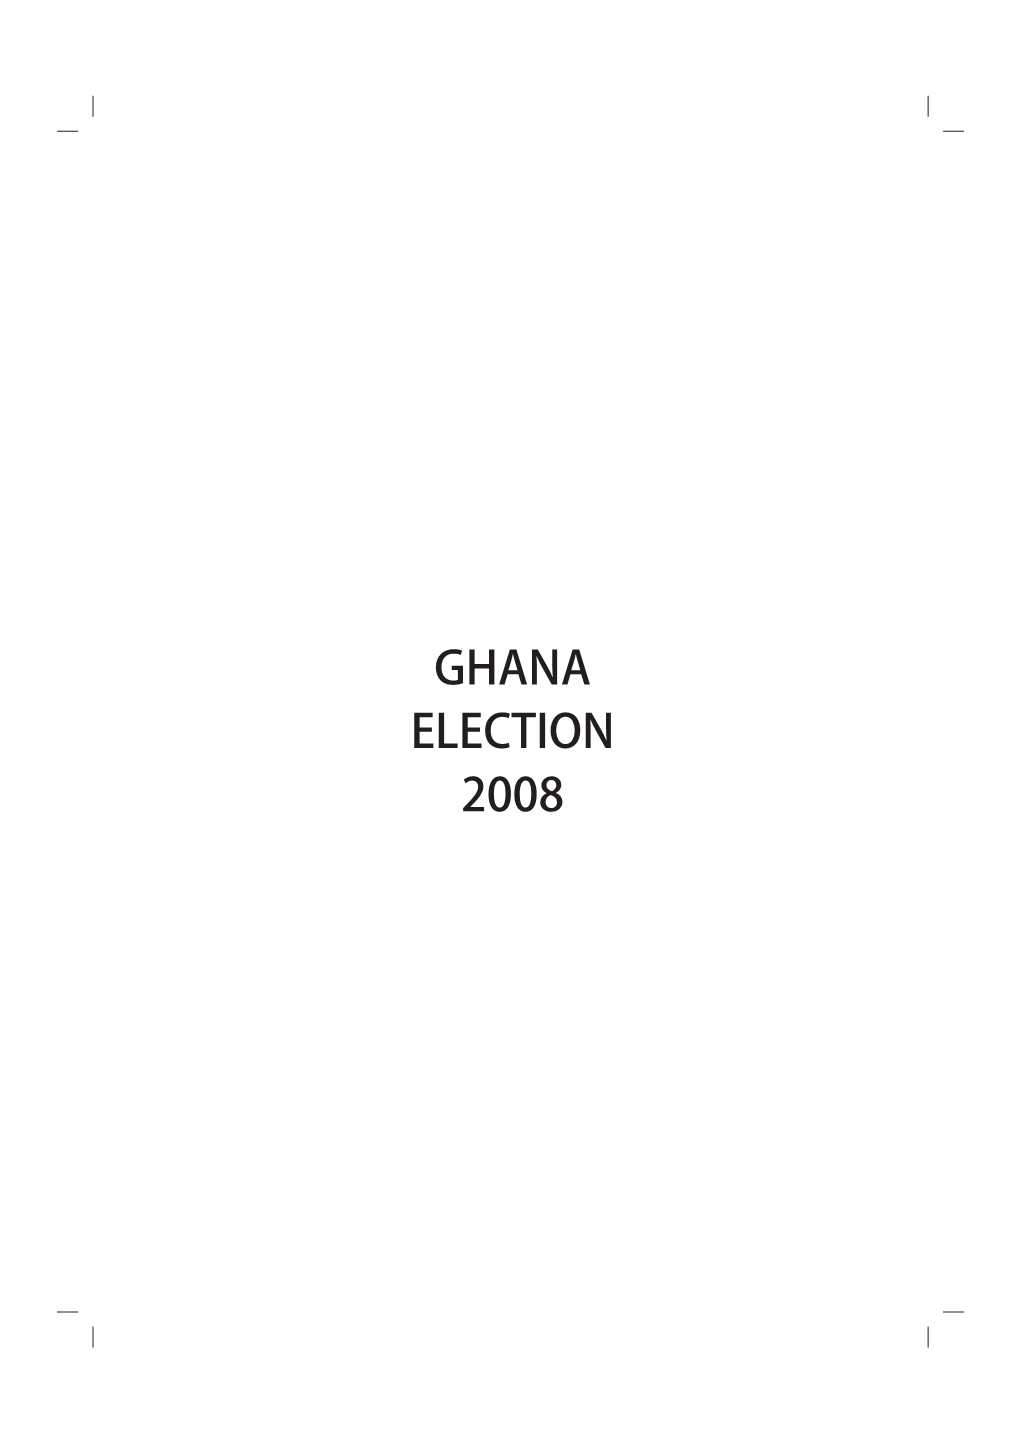 GHANA ELECTION 2008 © 2010 Friedrich-Ebert-Stiftung, Ghana